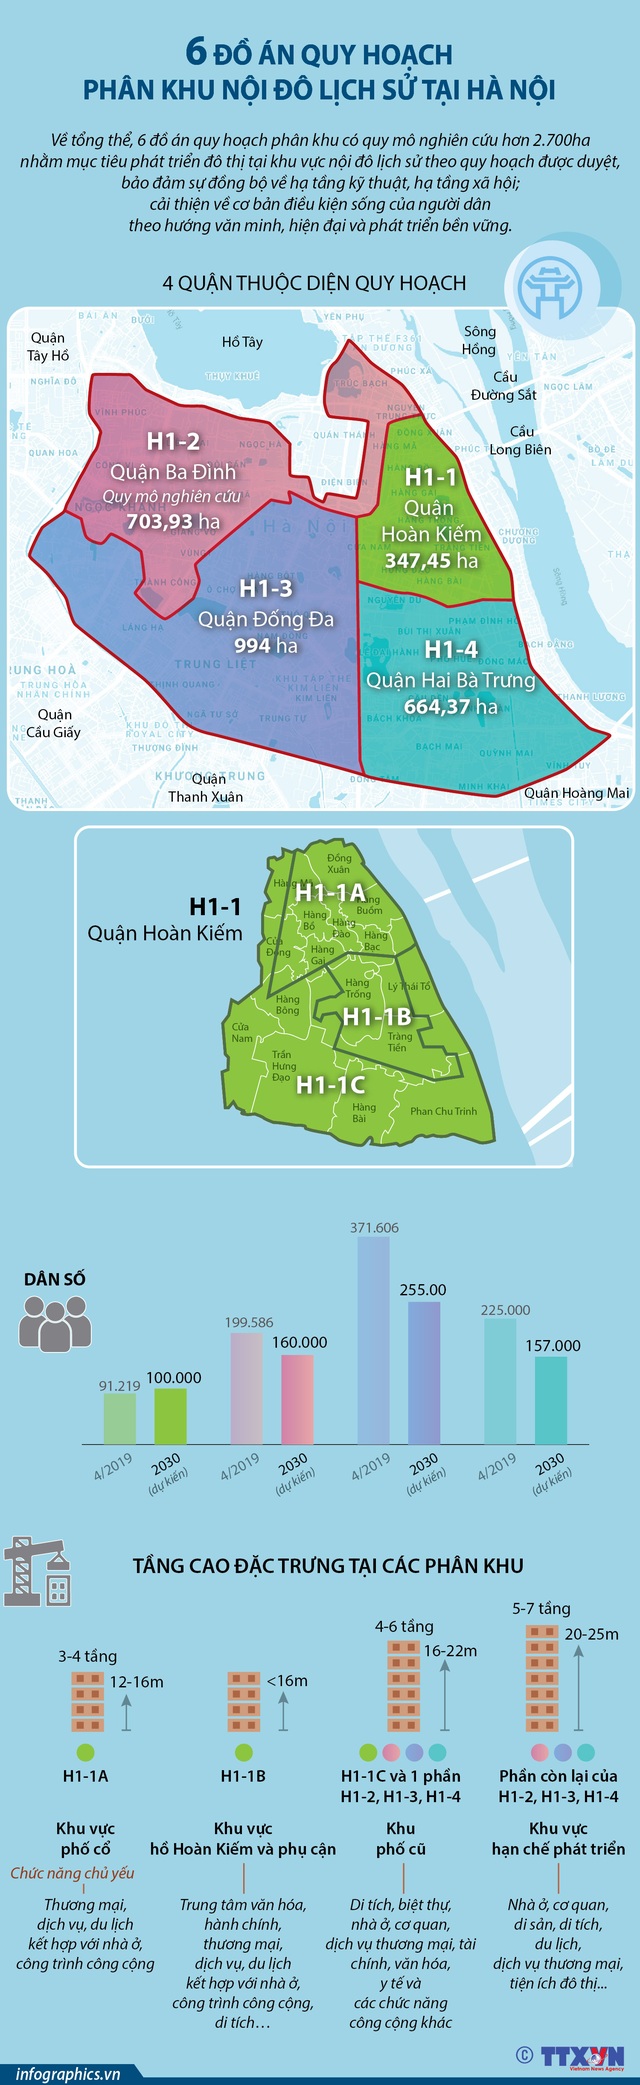 [INFOGRAPHIC] 6 đồ án quy hoạch phân khu nội đô lịch sử tại Hà Nội - Ảnh 1.